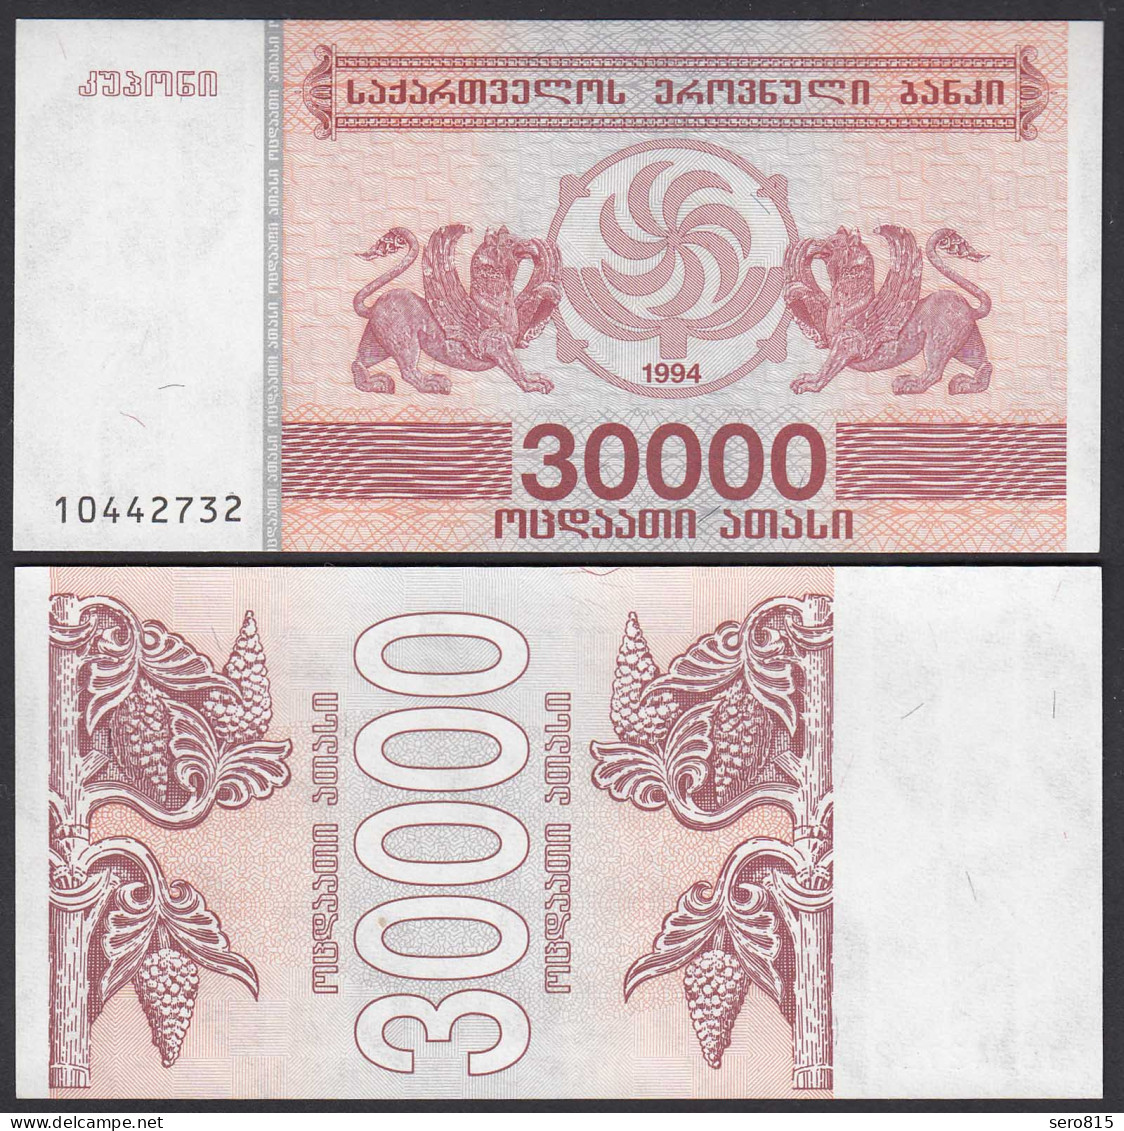  Georgien - Georgia 30000 30.000 Lari 1994 Pick 47 UNC (1)    (25577 - Autres - Asie